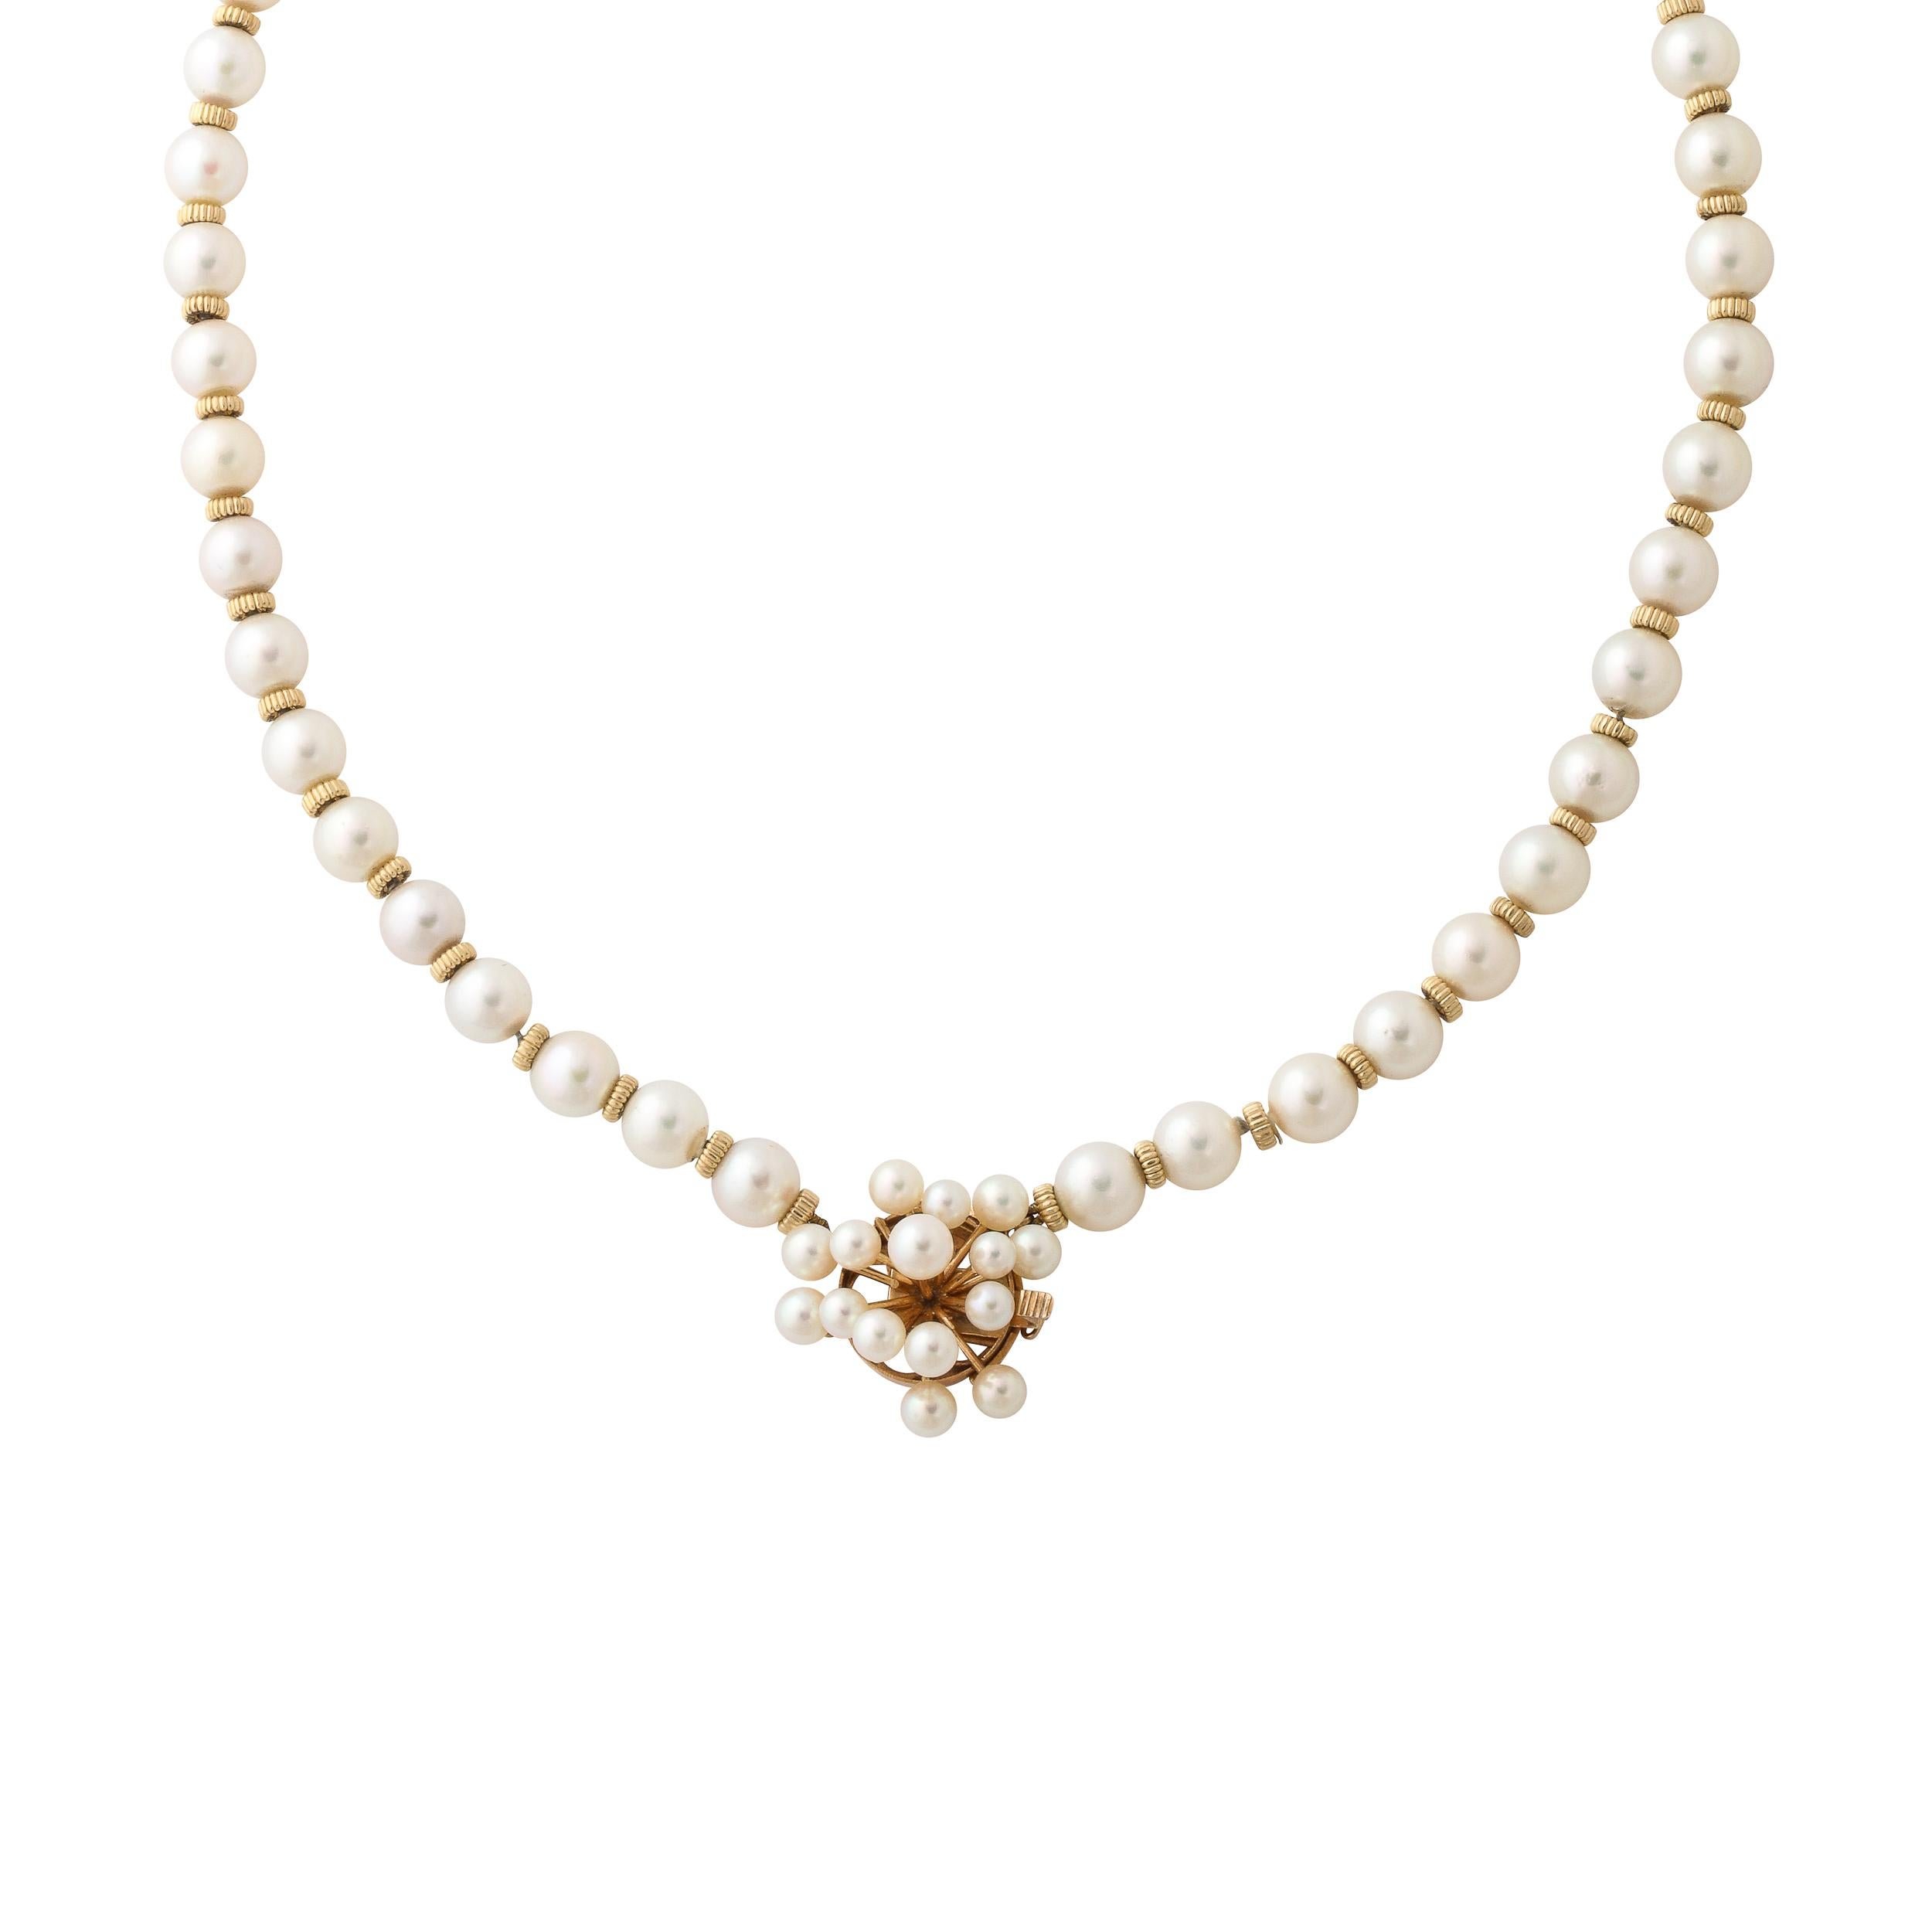 Diese Mid-Century Modernist Perle und 14k Gold Halskette ist mit ca. 7mm Perlen mit einem gerippten 14k Gold Spacer zwischen jeder Perle und fertig mit einem Sputnik Form Verschluss in 14k Gelbgold mit 14 Perlen gesetzt. Der Verschluss ist mit 14